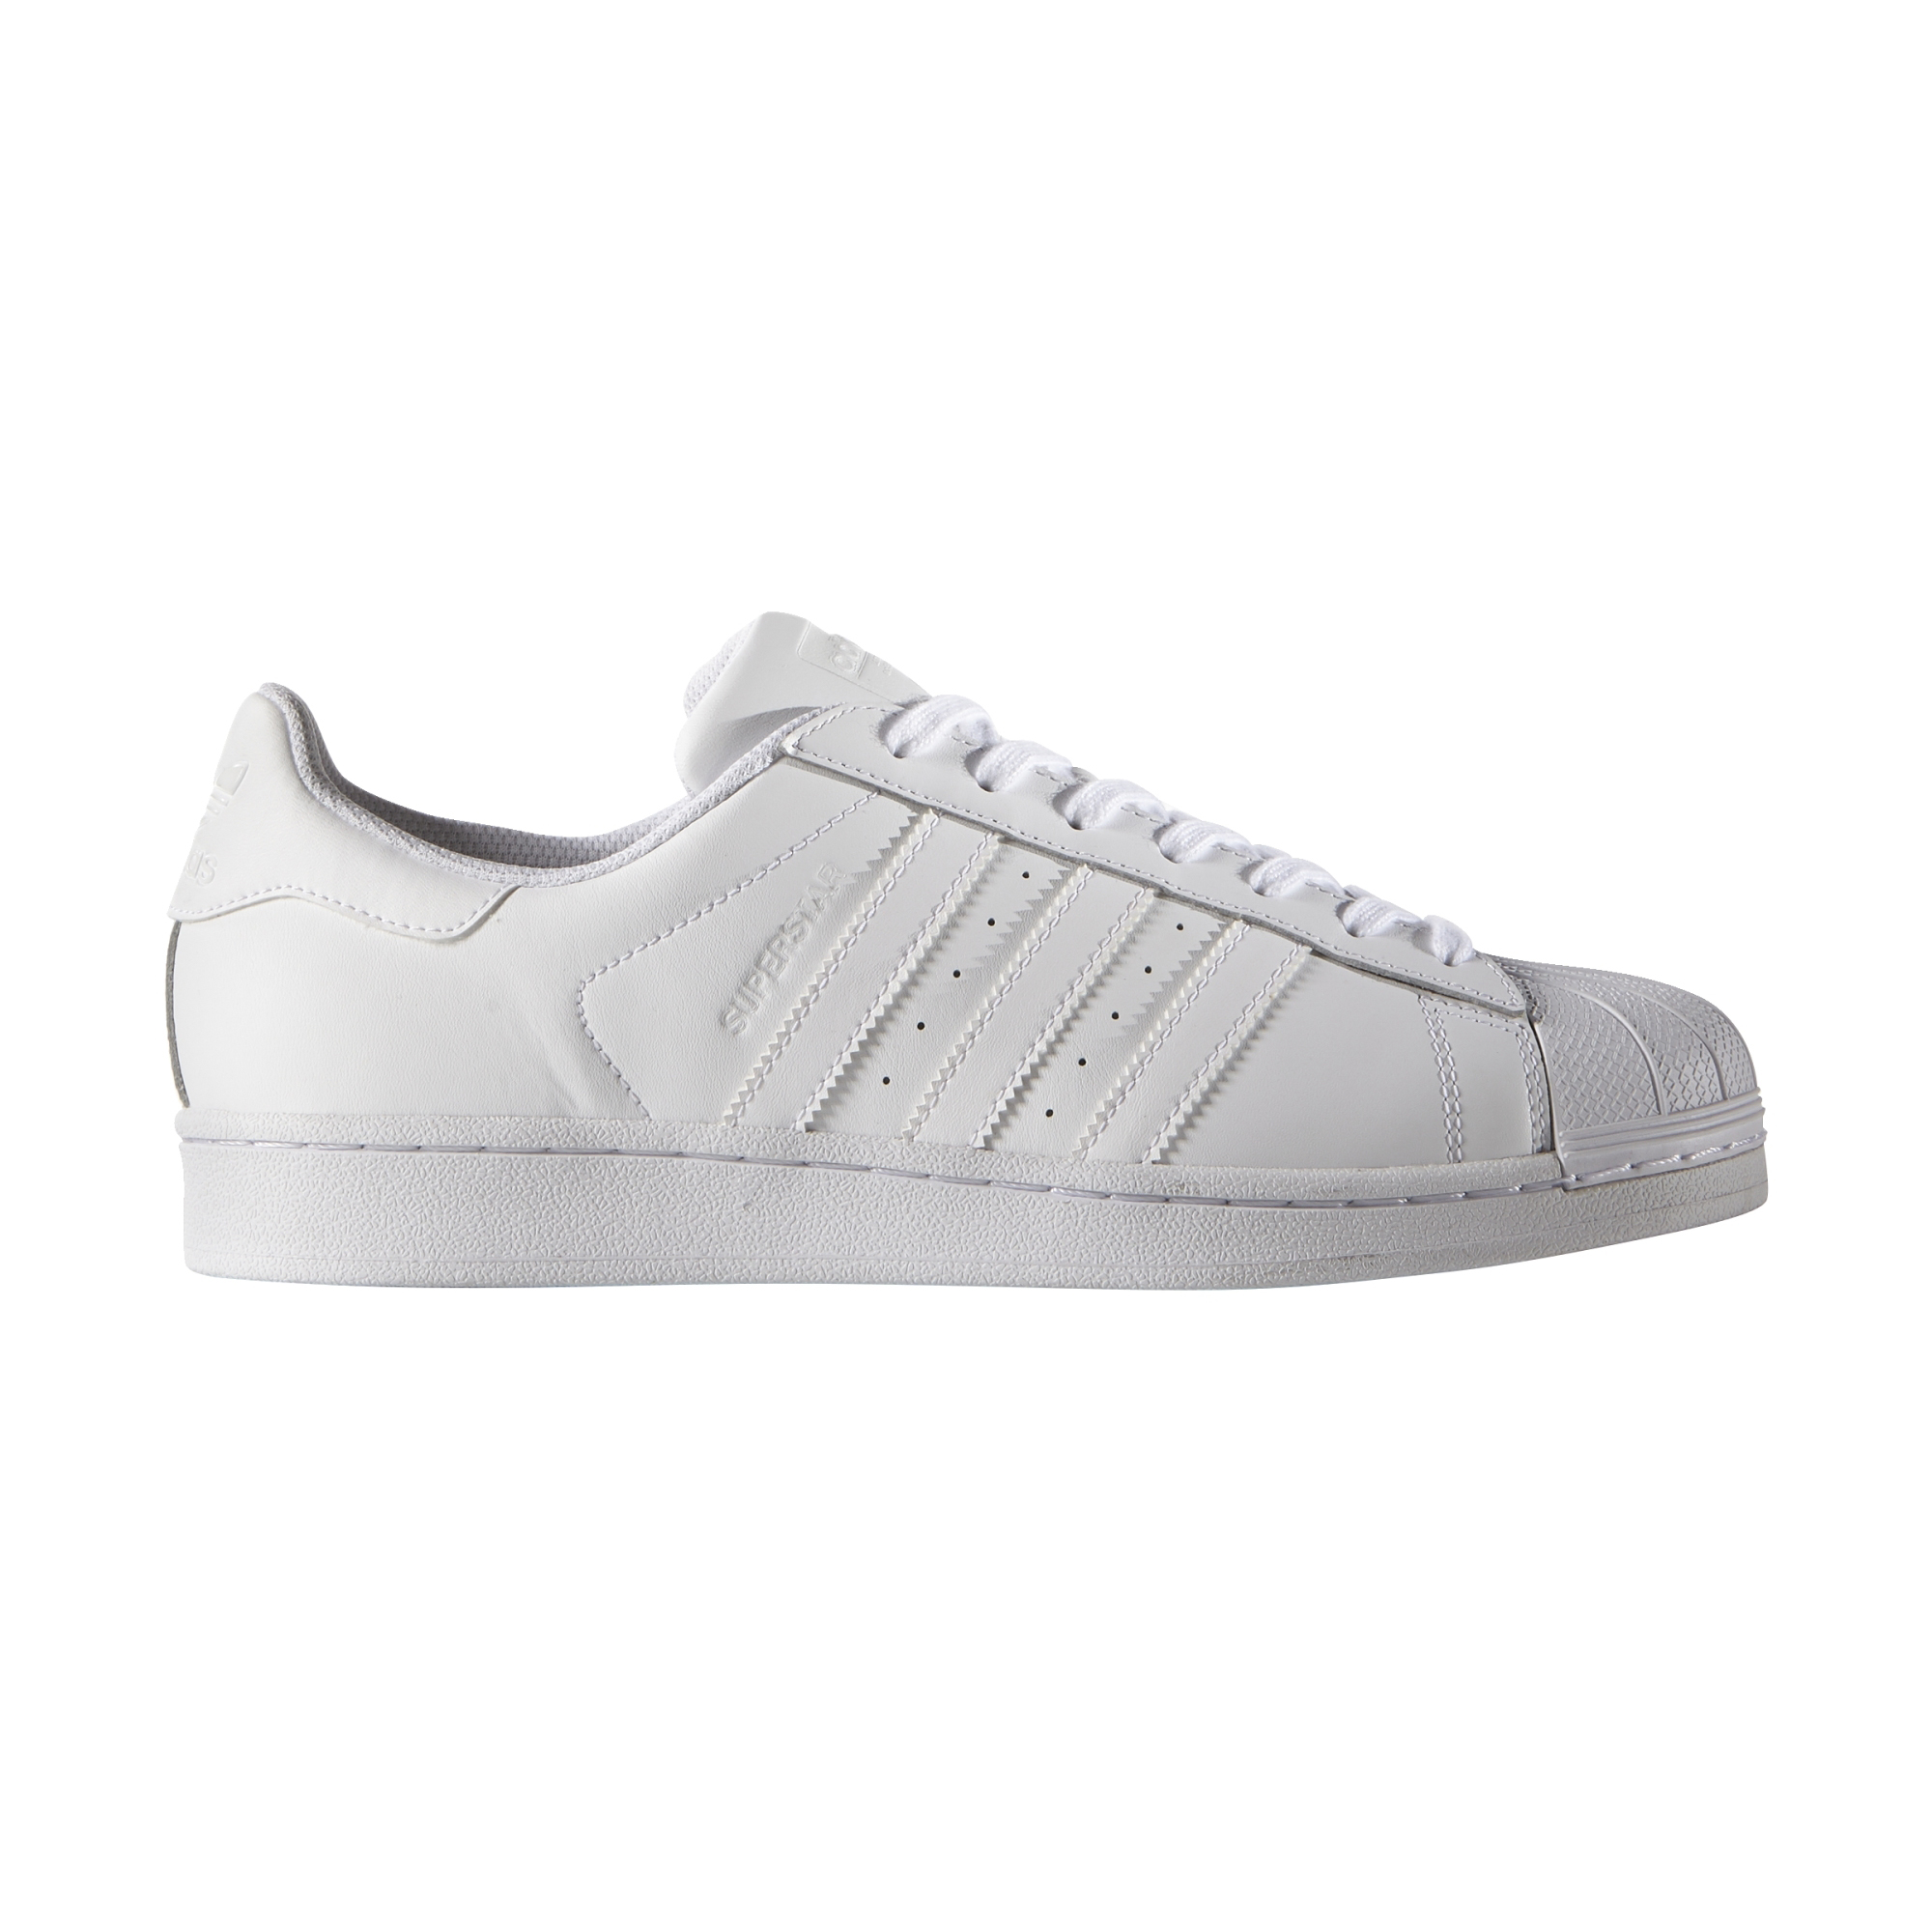 Adidas Superstar (footwear white)